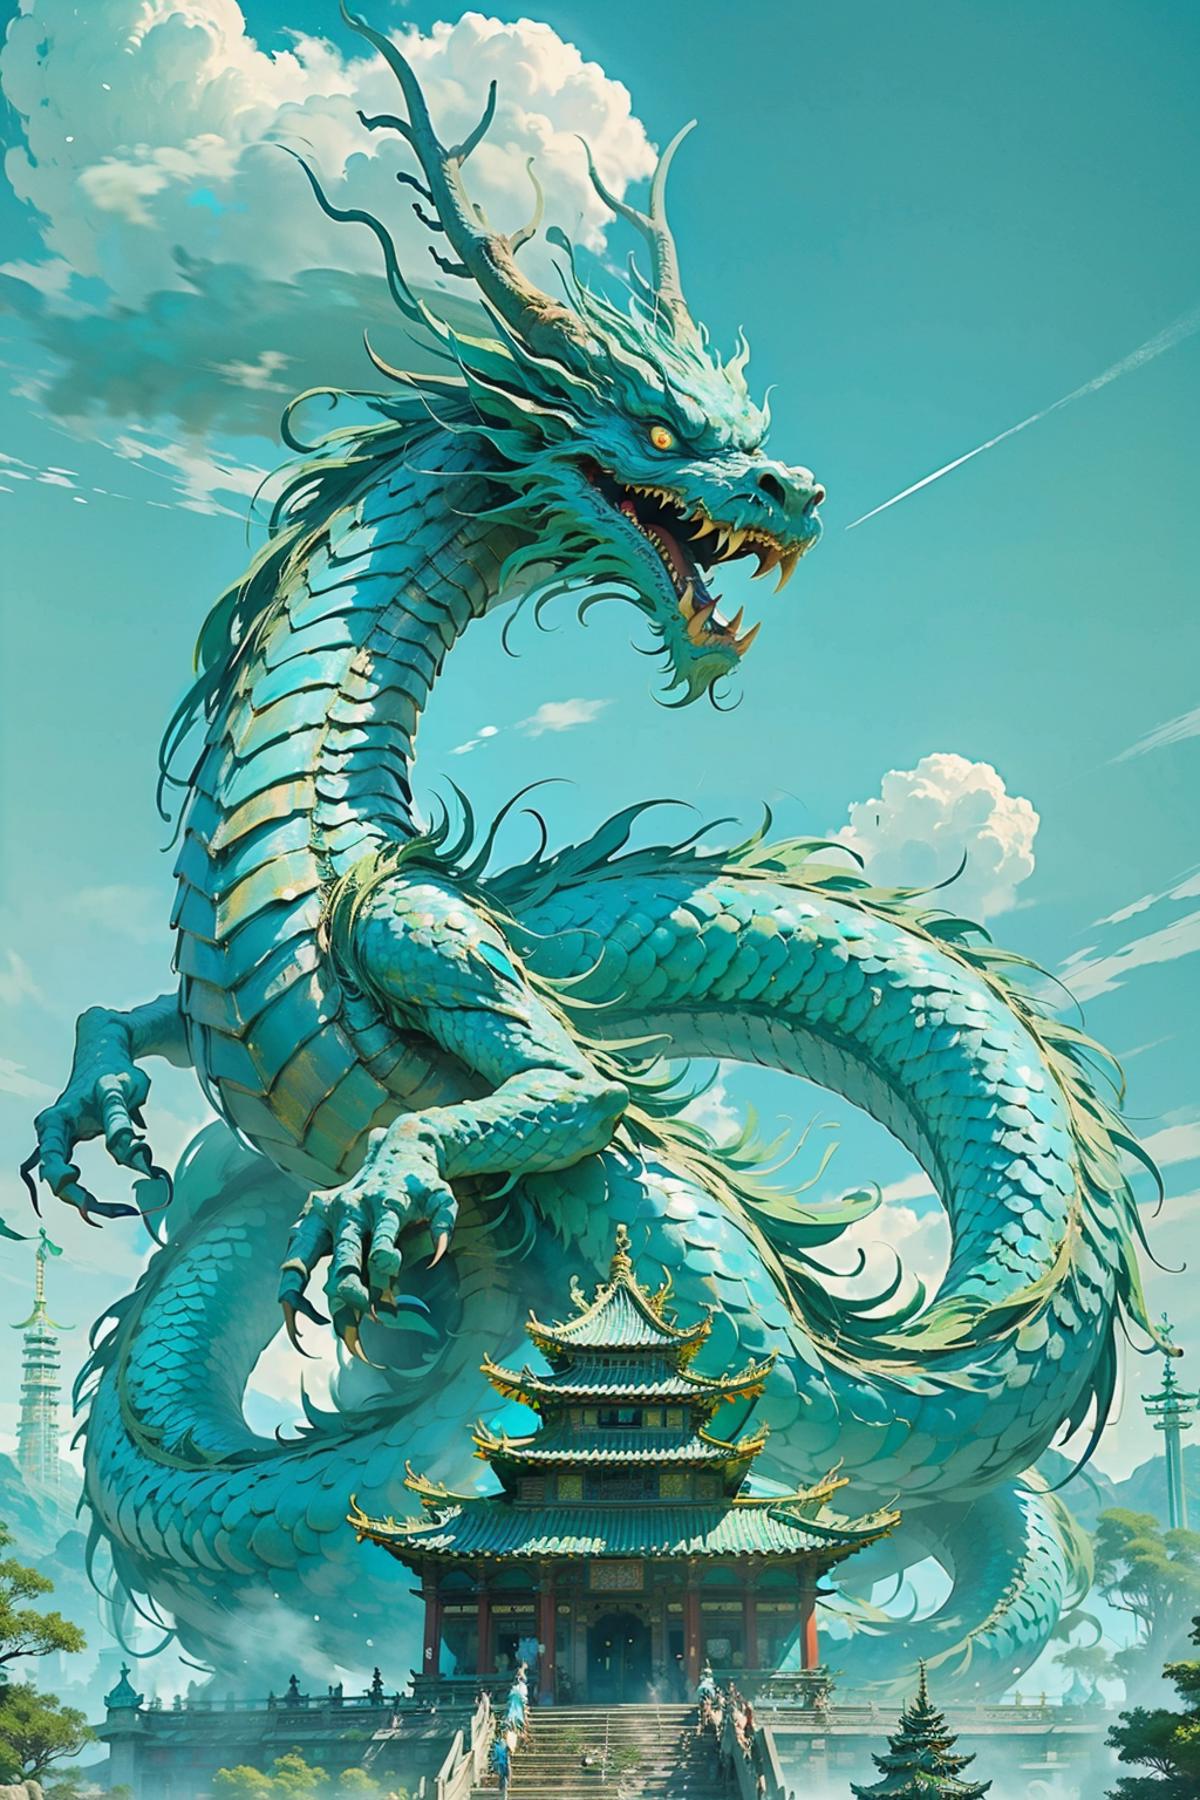 东方巨龙 Oriental giant dragon image by chocolae